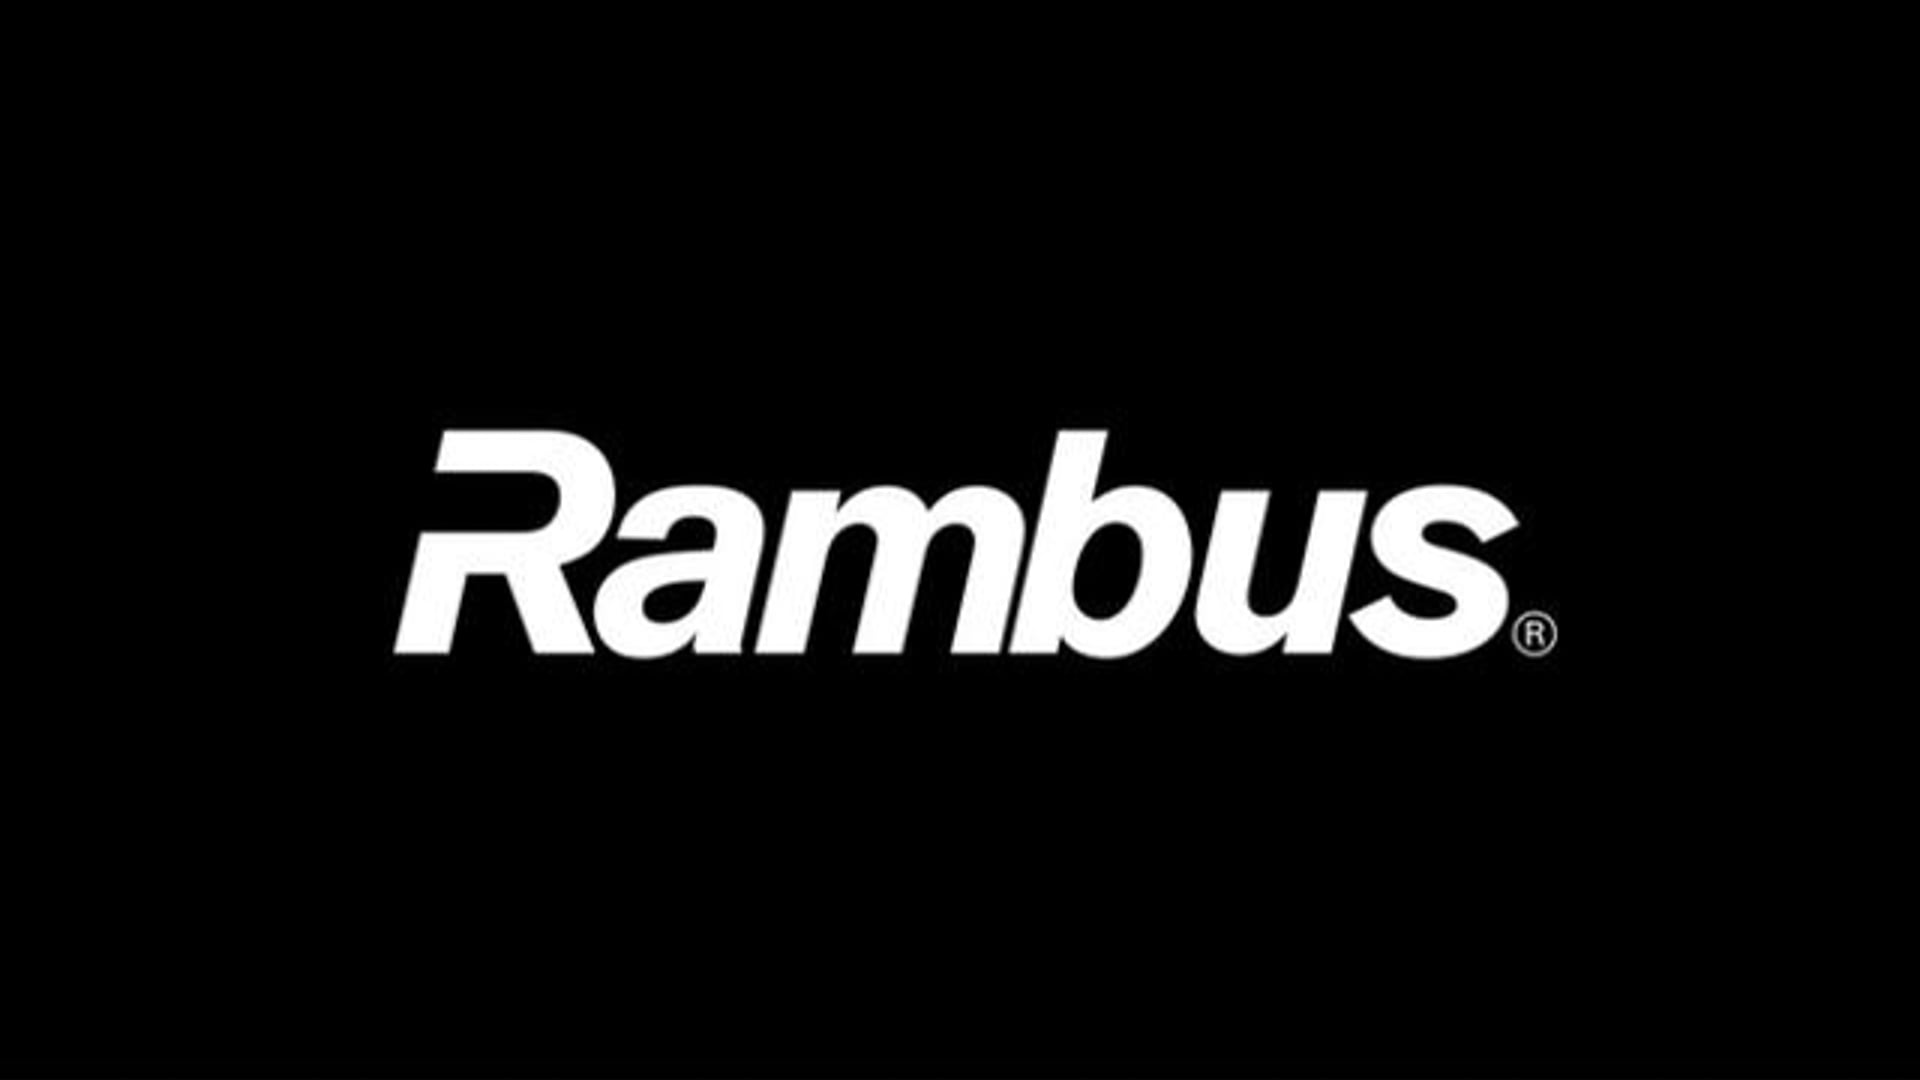 Rambus XDR 0:30 spot